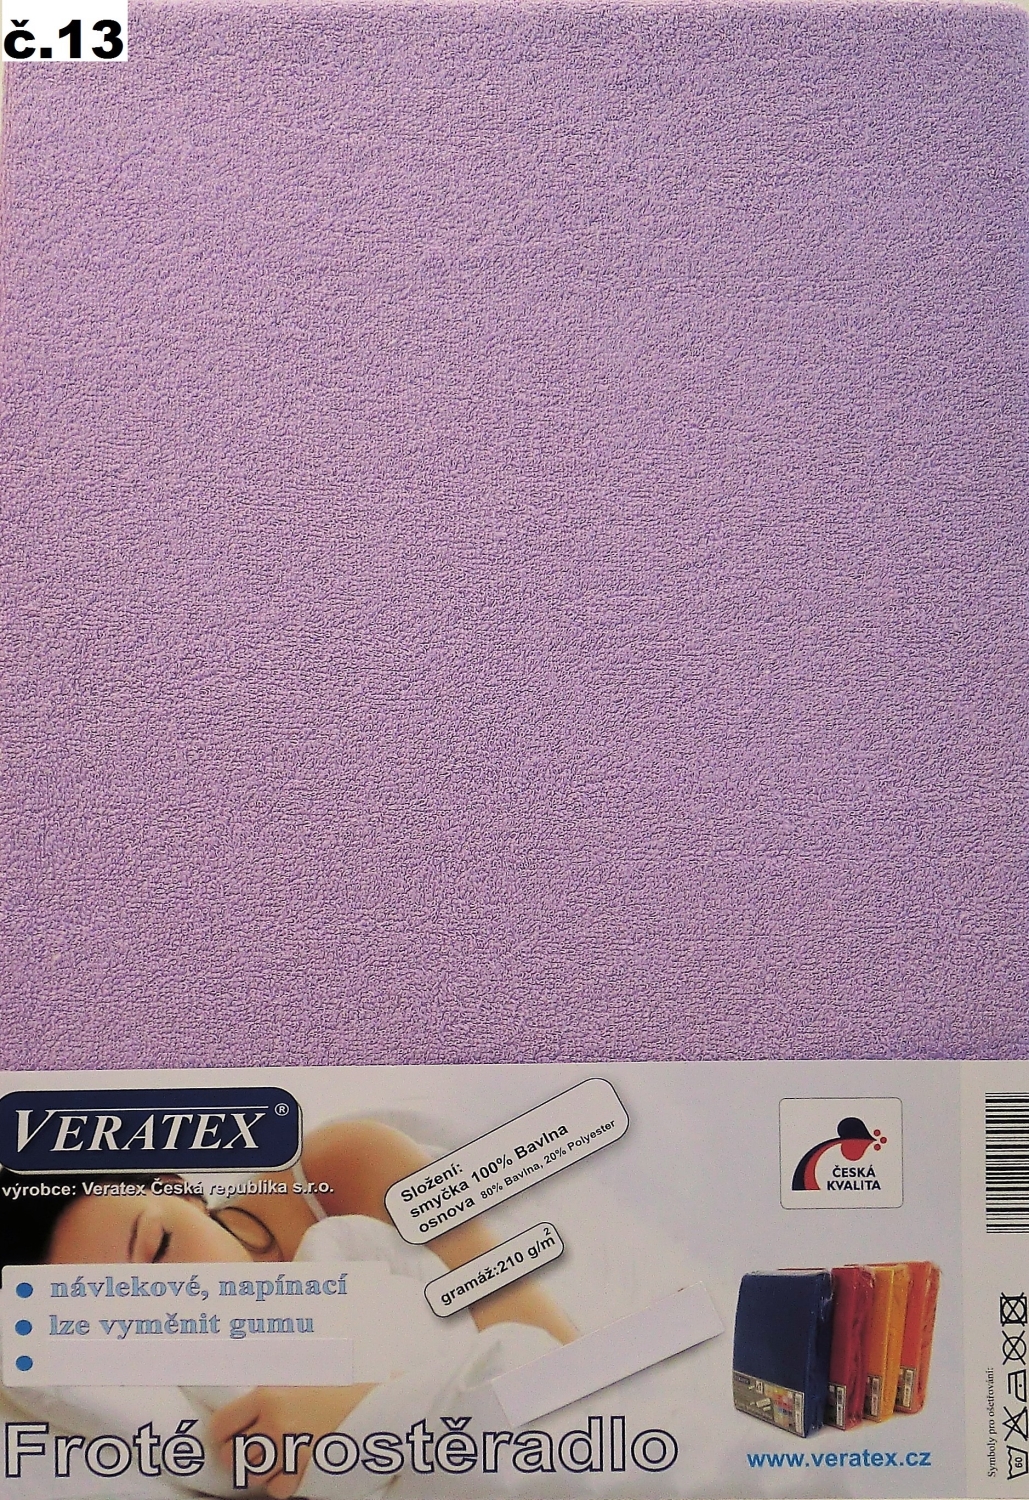 Veratex Froté prostěradlo jednolůžko 90x200/16 cm (č.13-fialková)